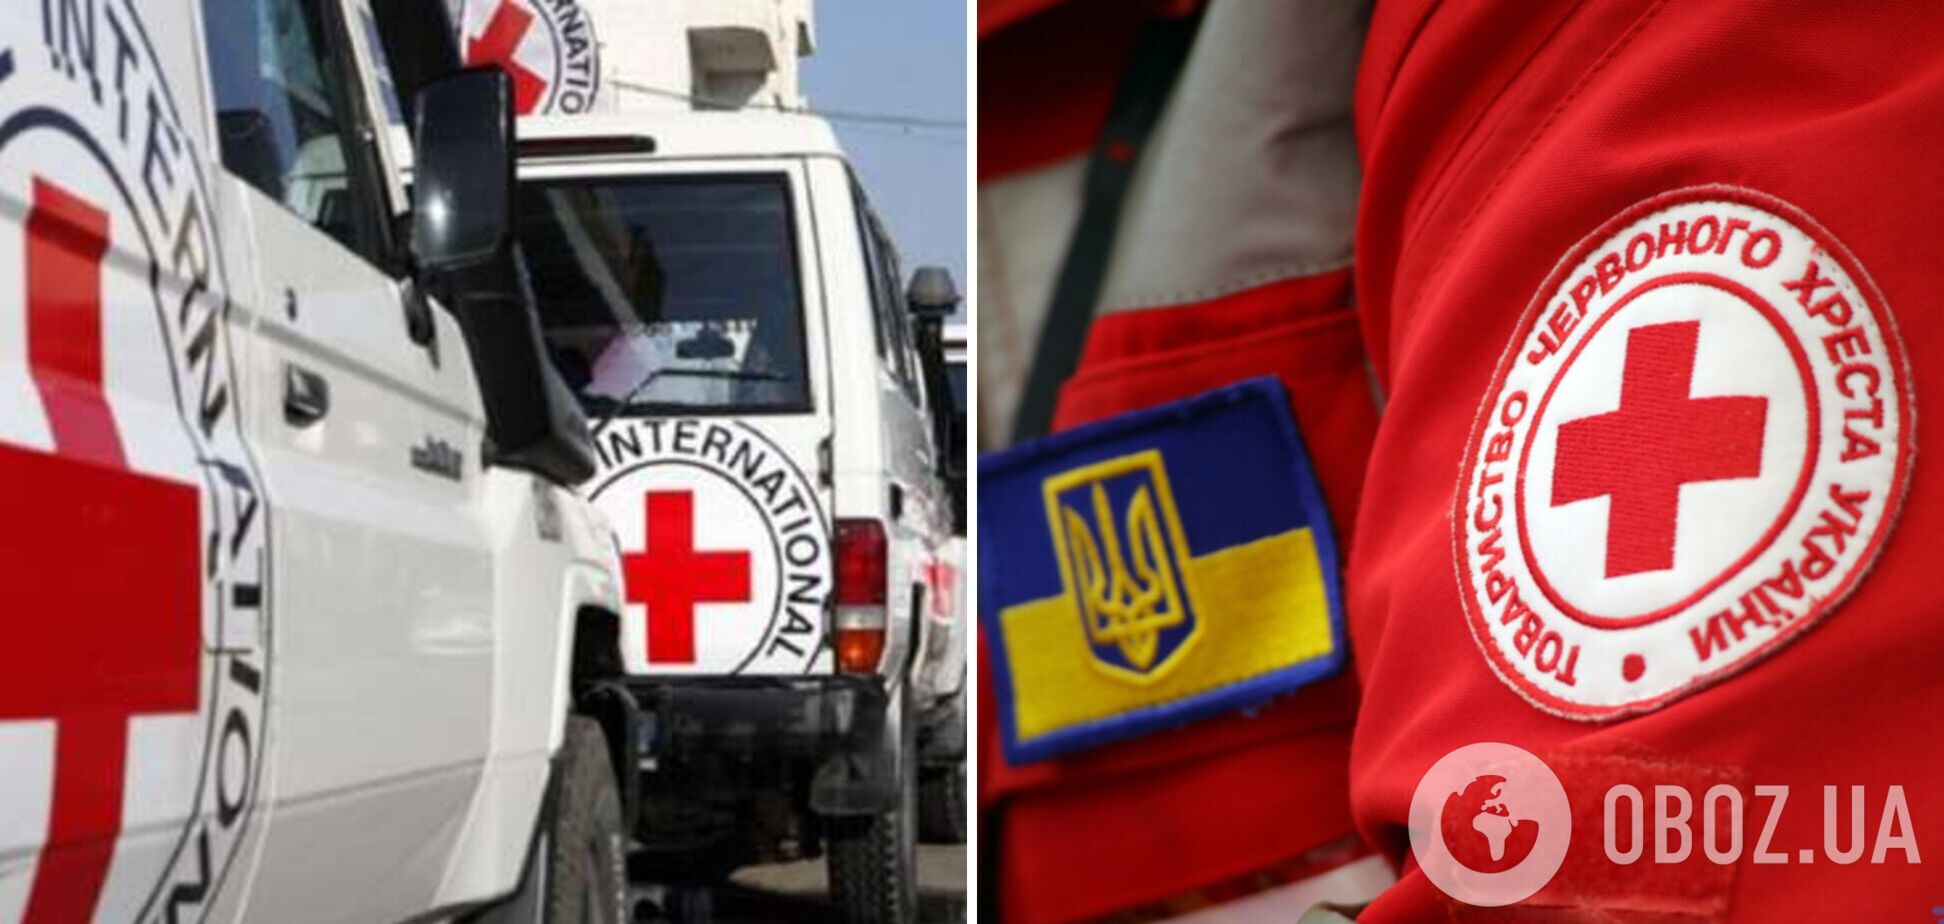 Відділення Червоного Хреста в Донецькій області зазнало удару. Фото